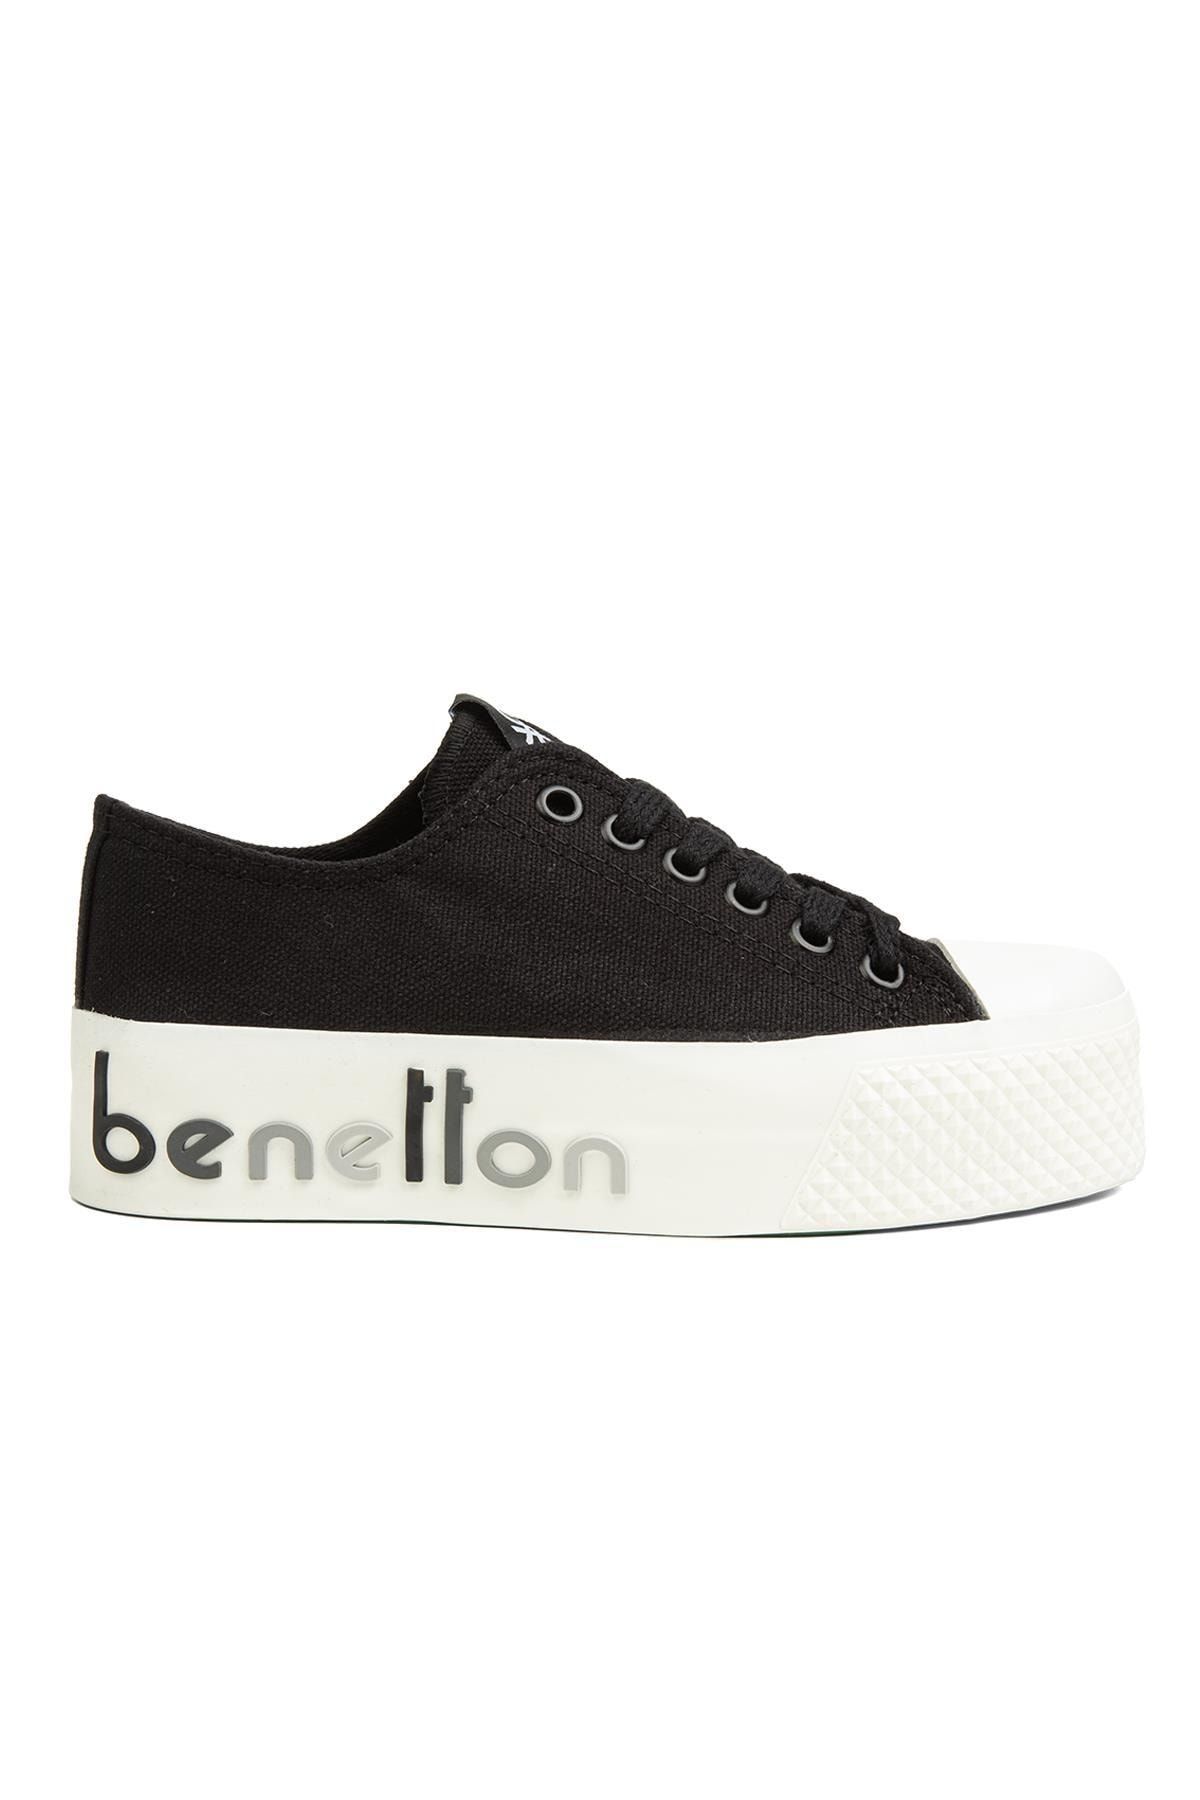 Benetton ® | Bn-30936 - 3114 Siyah - Kadın Spor Ayakkabı